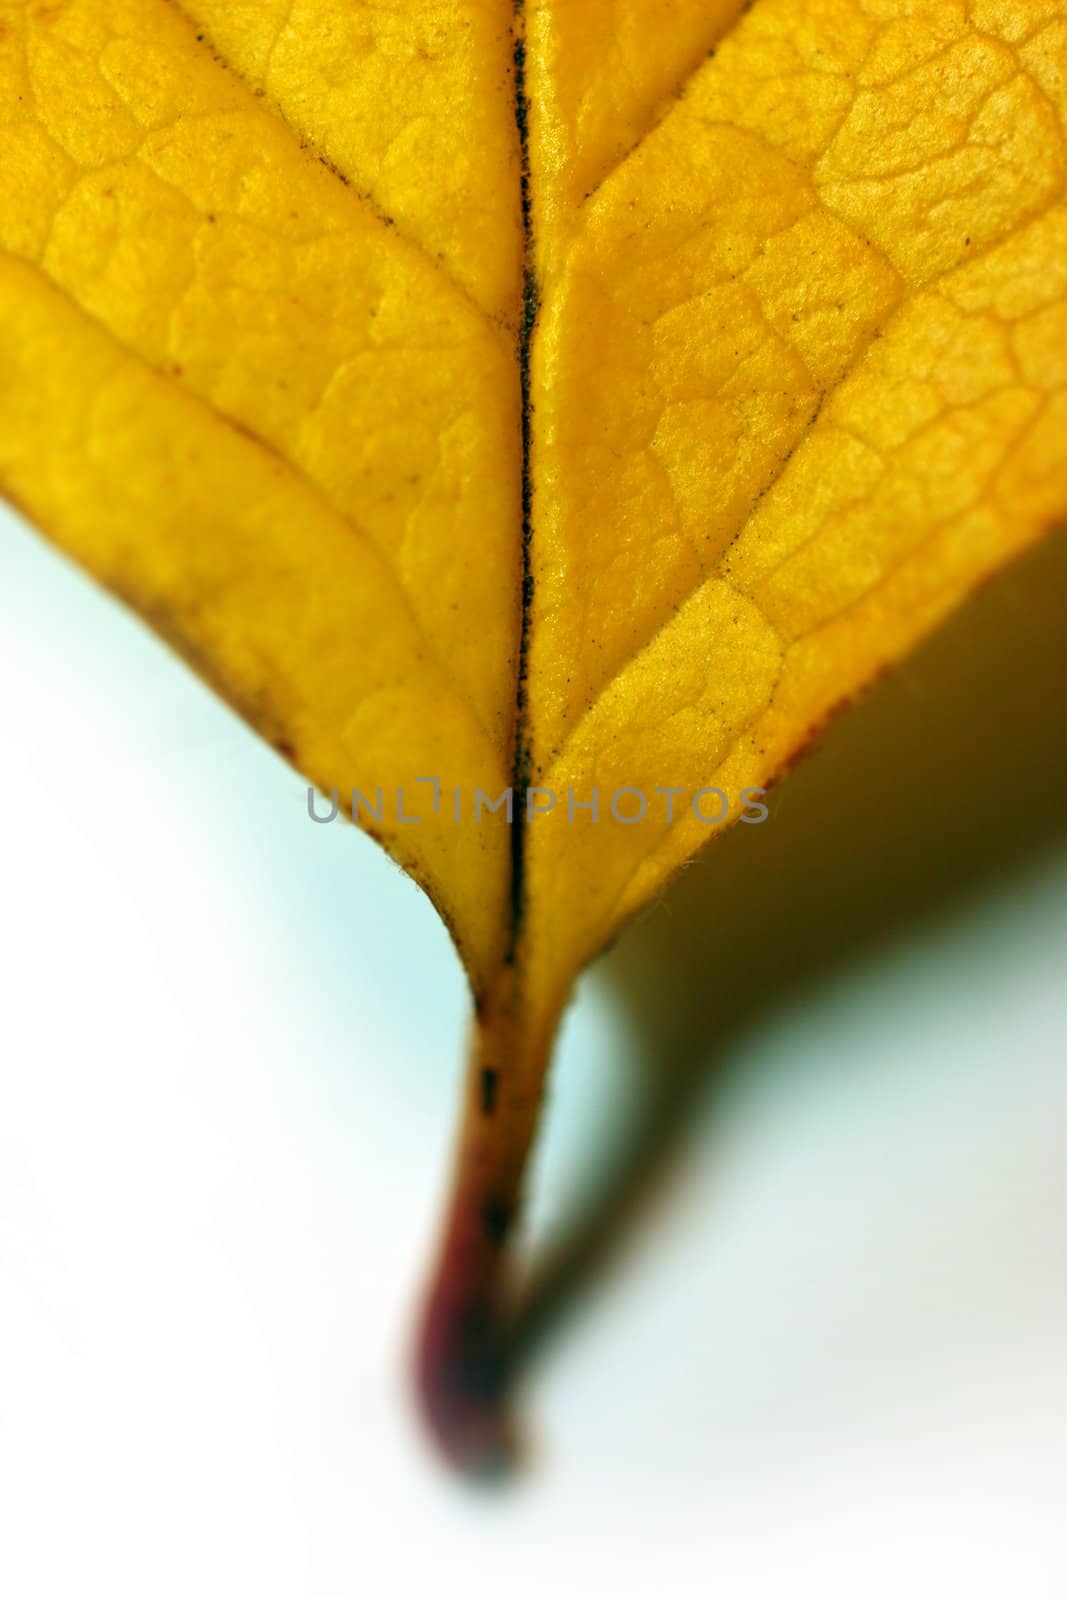 Fallen leaf by klikk